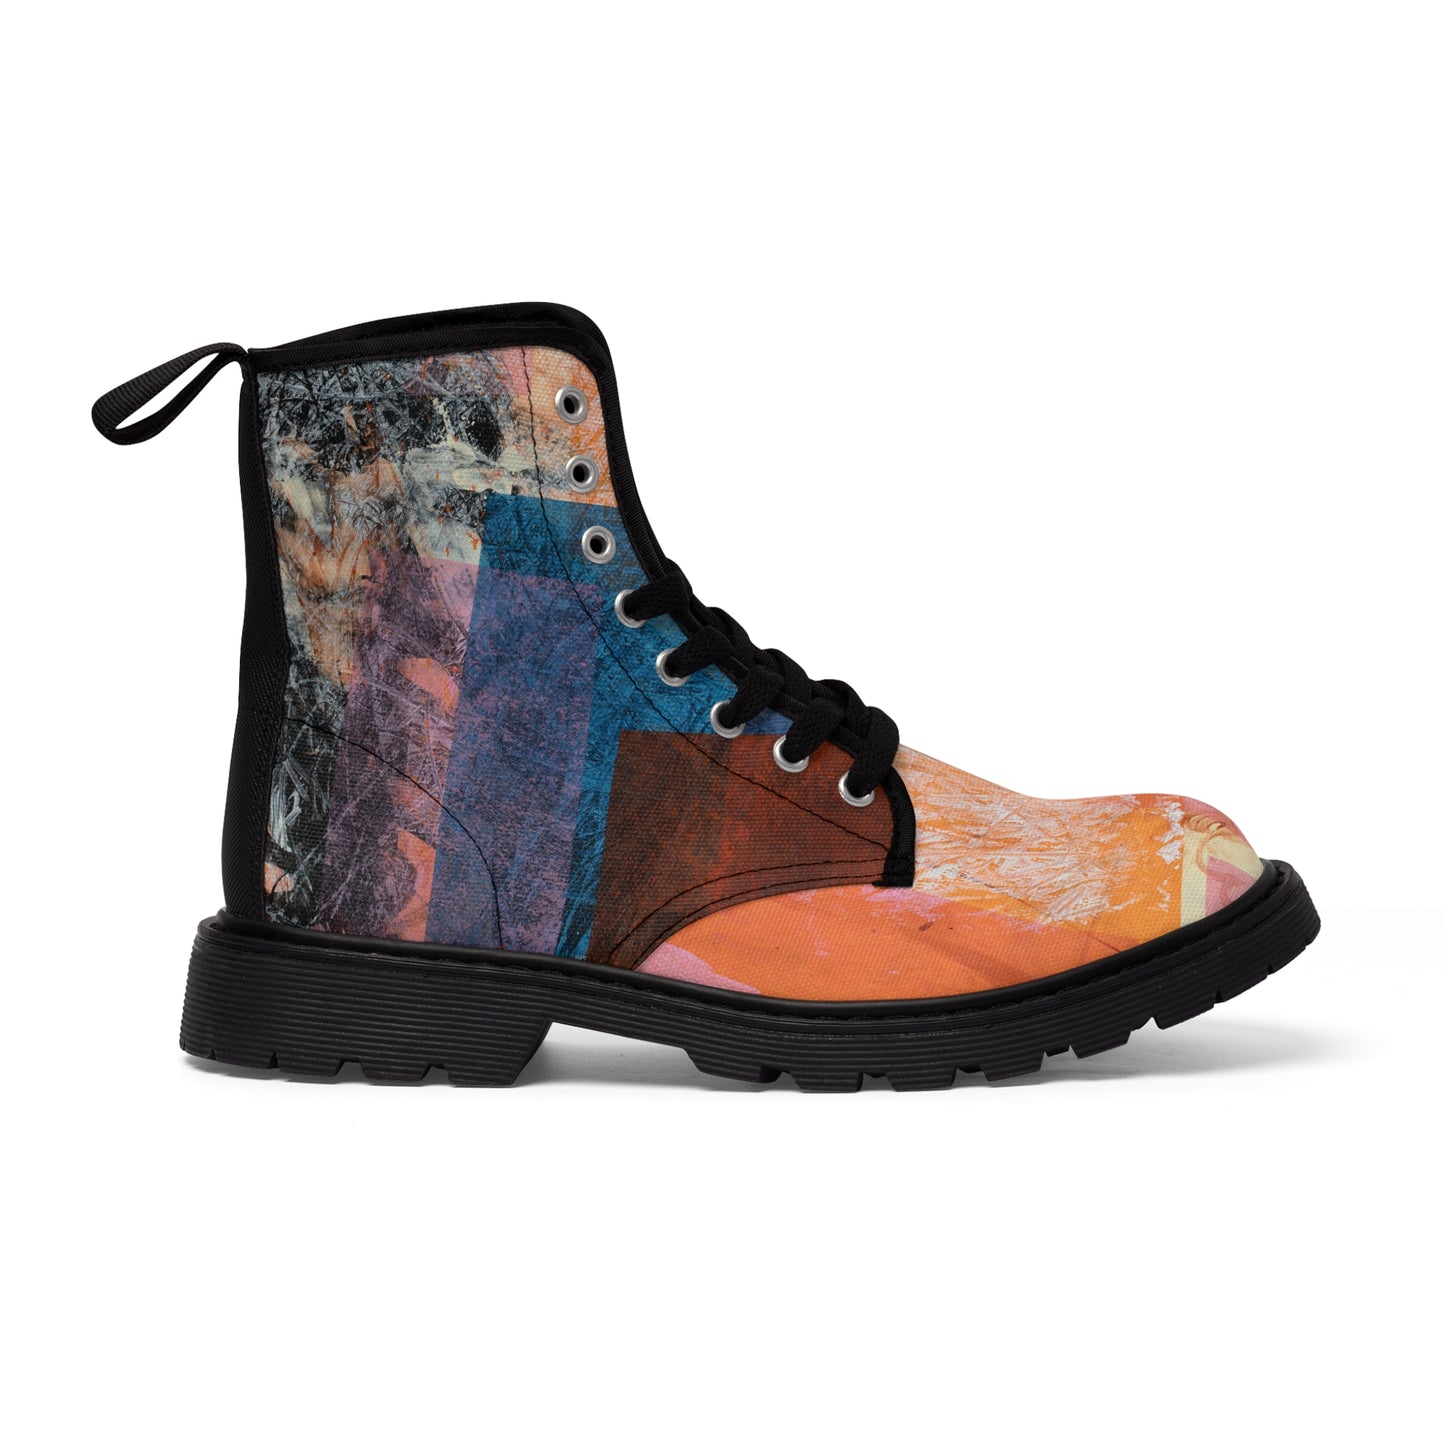 Women's Canvas Boots - 02862 US 11 Black sole